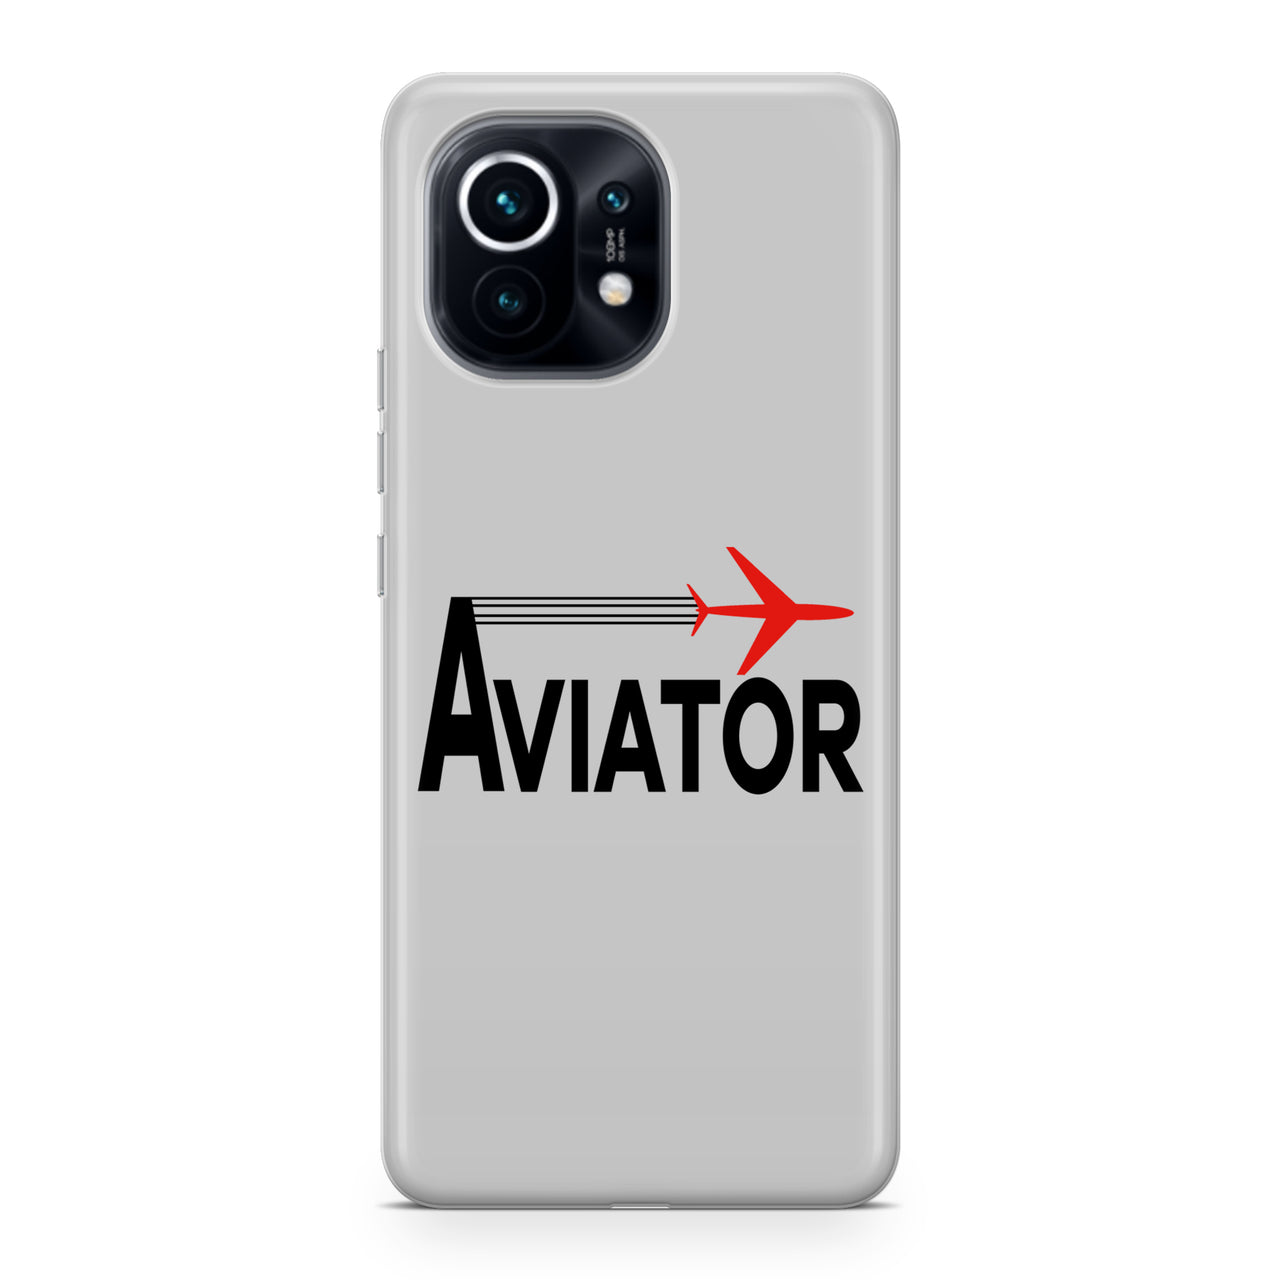 Aviator Designed Xiaomi Cases